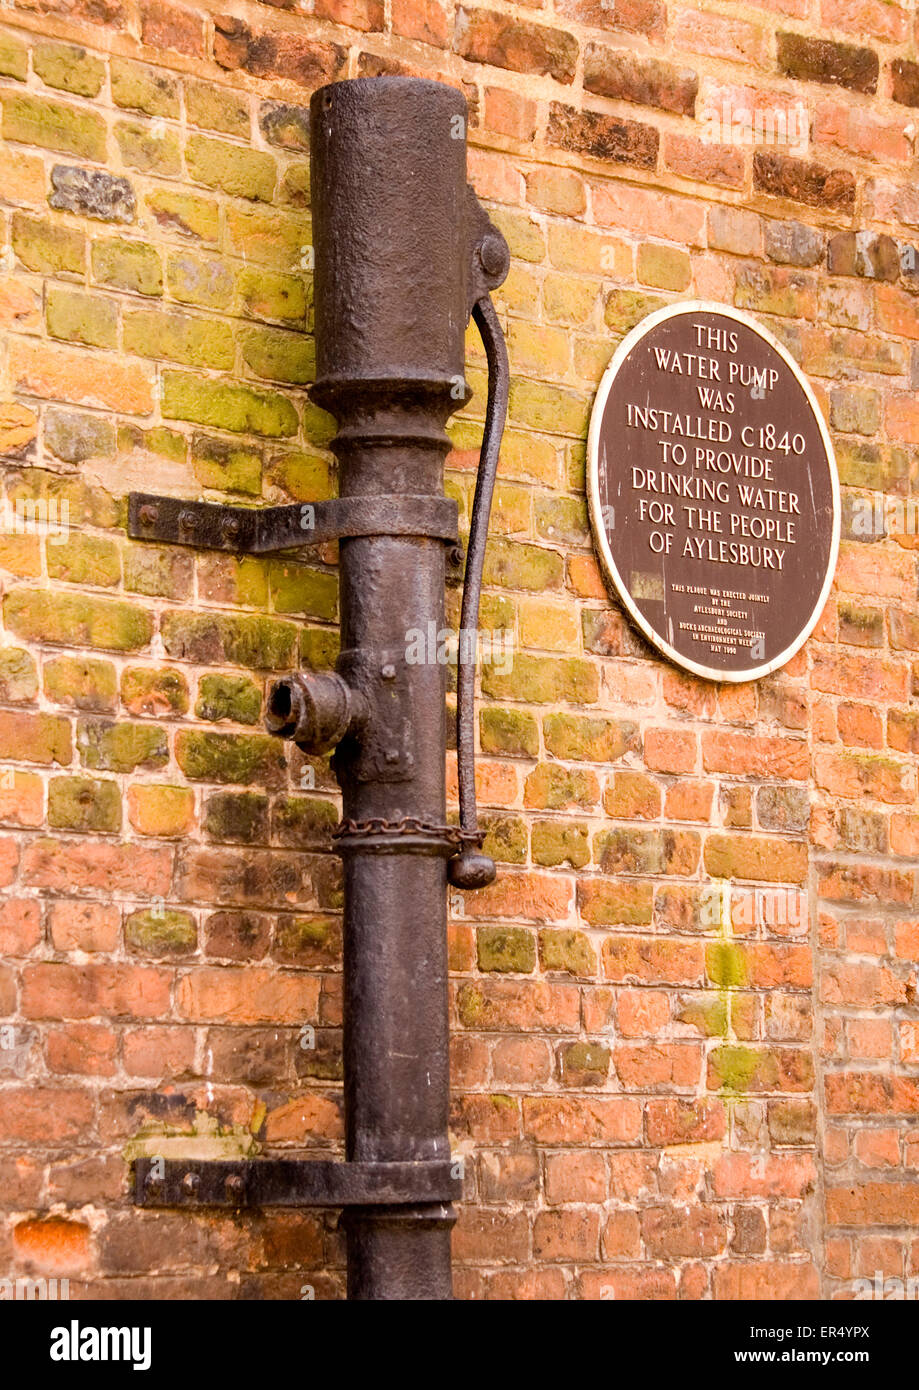 Argent - Aylesbury - histoire sociale - pompe d'eau potable - créé en 1840 - ferronnerie - plaque d'information Banque D'Images